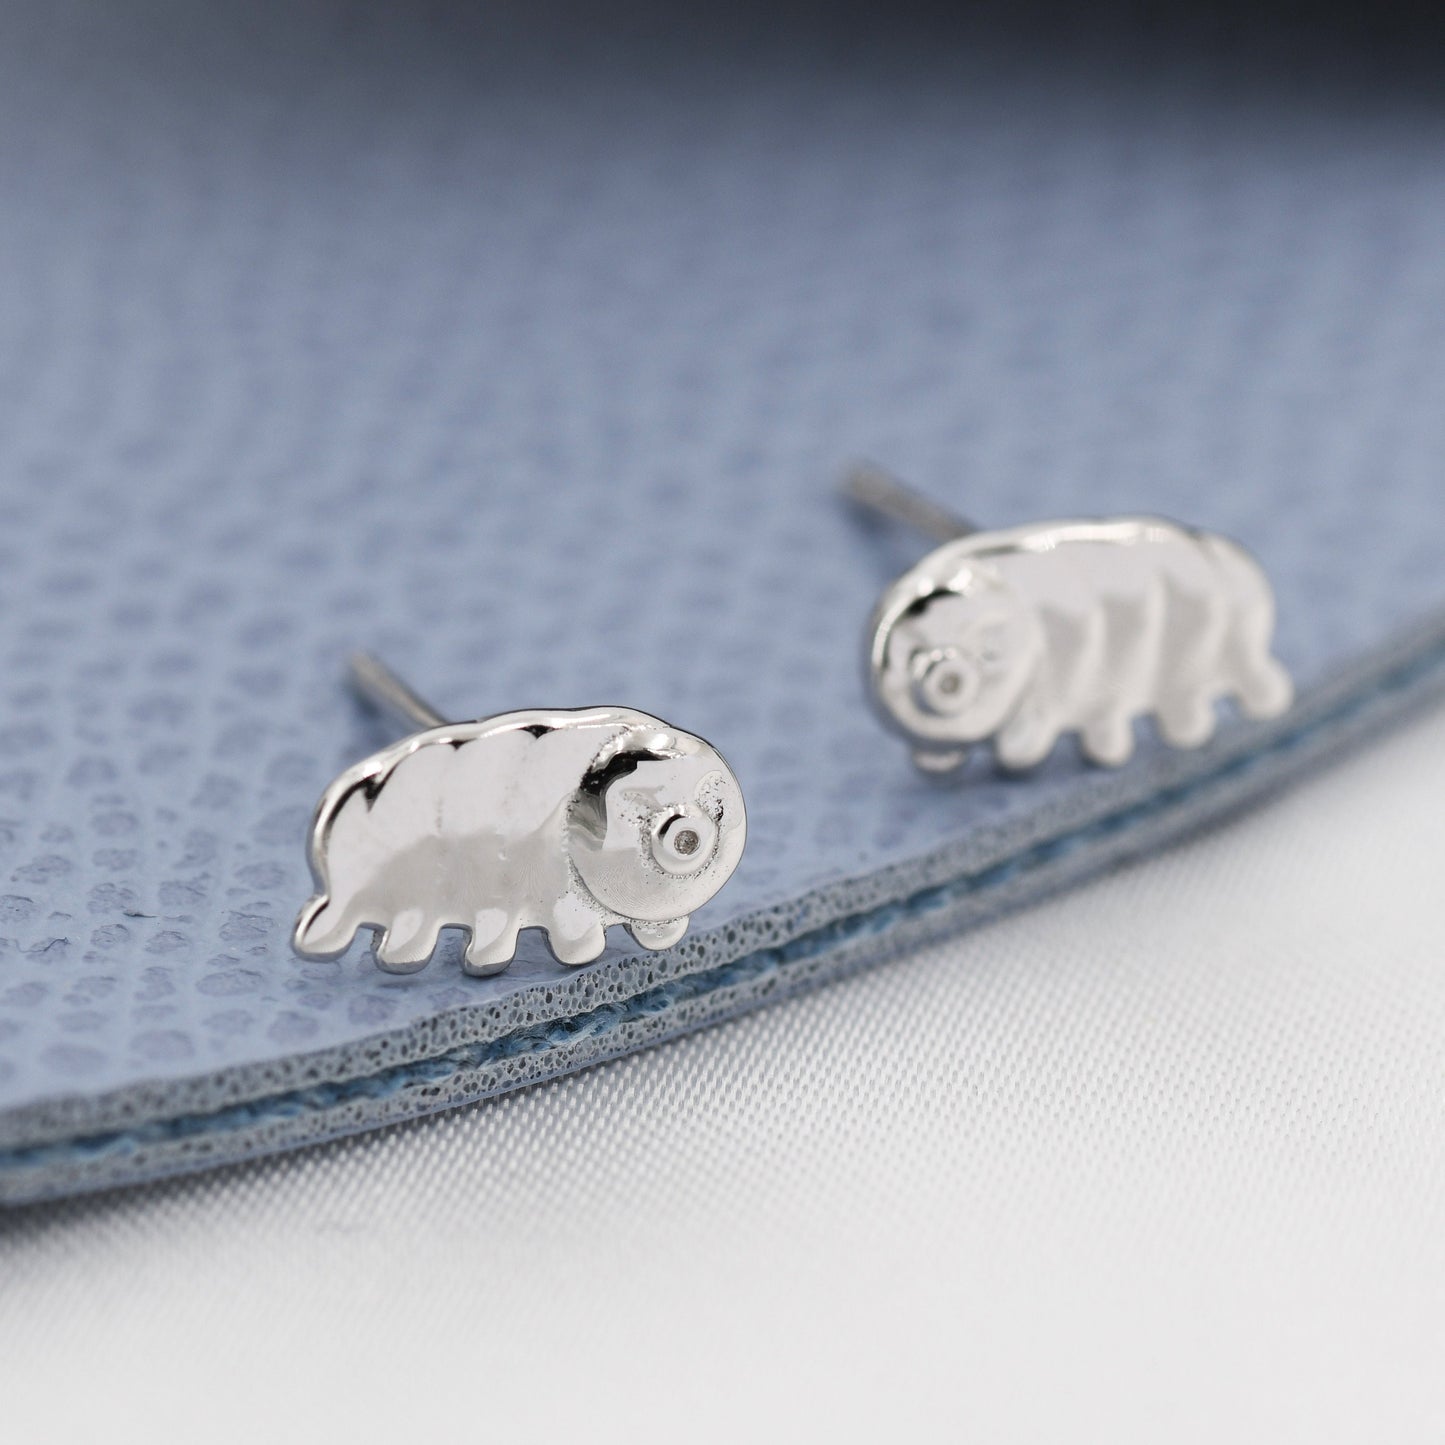 Water Bear Stud Earrings in Sterling Silver, Tardigrades Earrings, Nature Inspired Animal Earrings